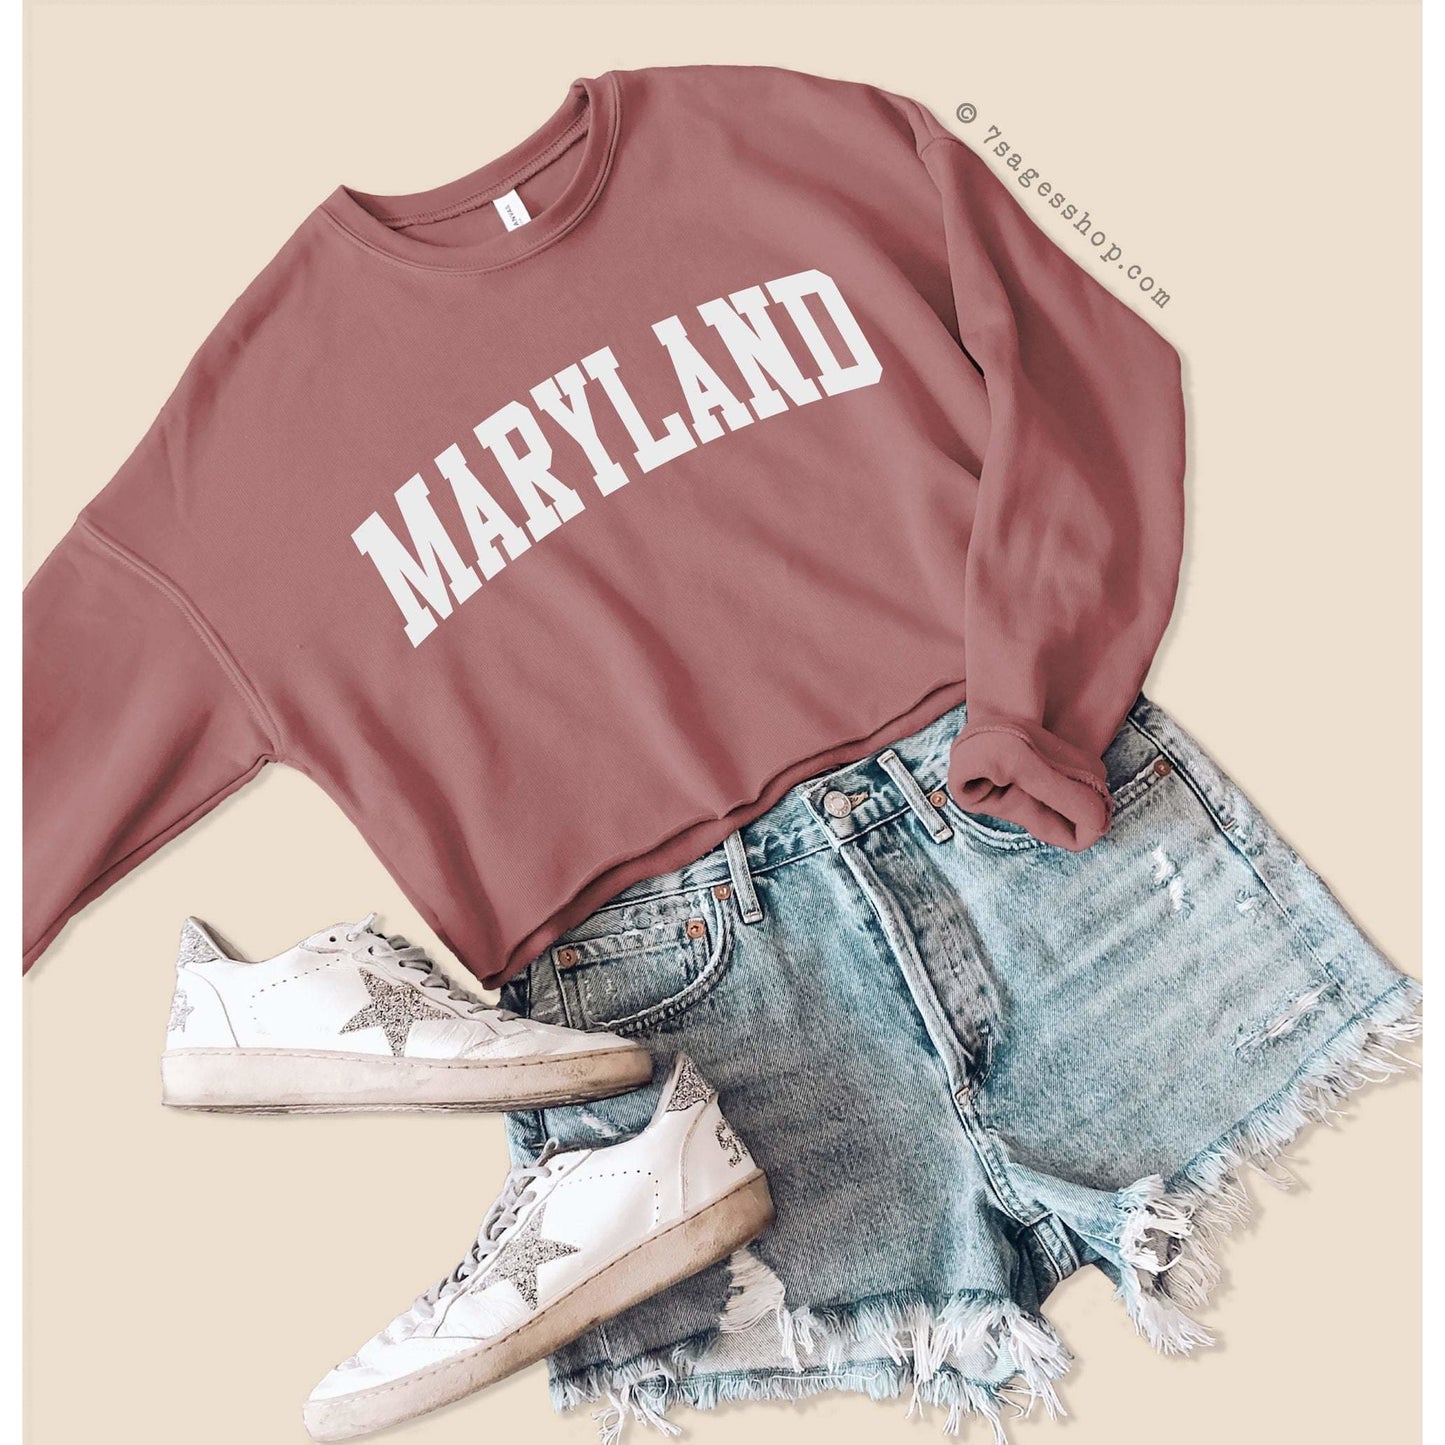 Maryland Sweatshirt - Maryland Cropped Sweatshirt - Maryland Shirts - University of Maryland Crop Top - Fleece Sweatshirt